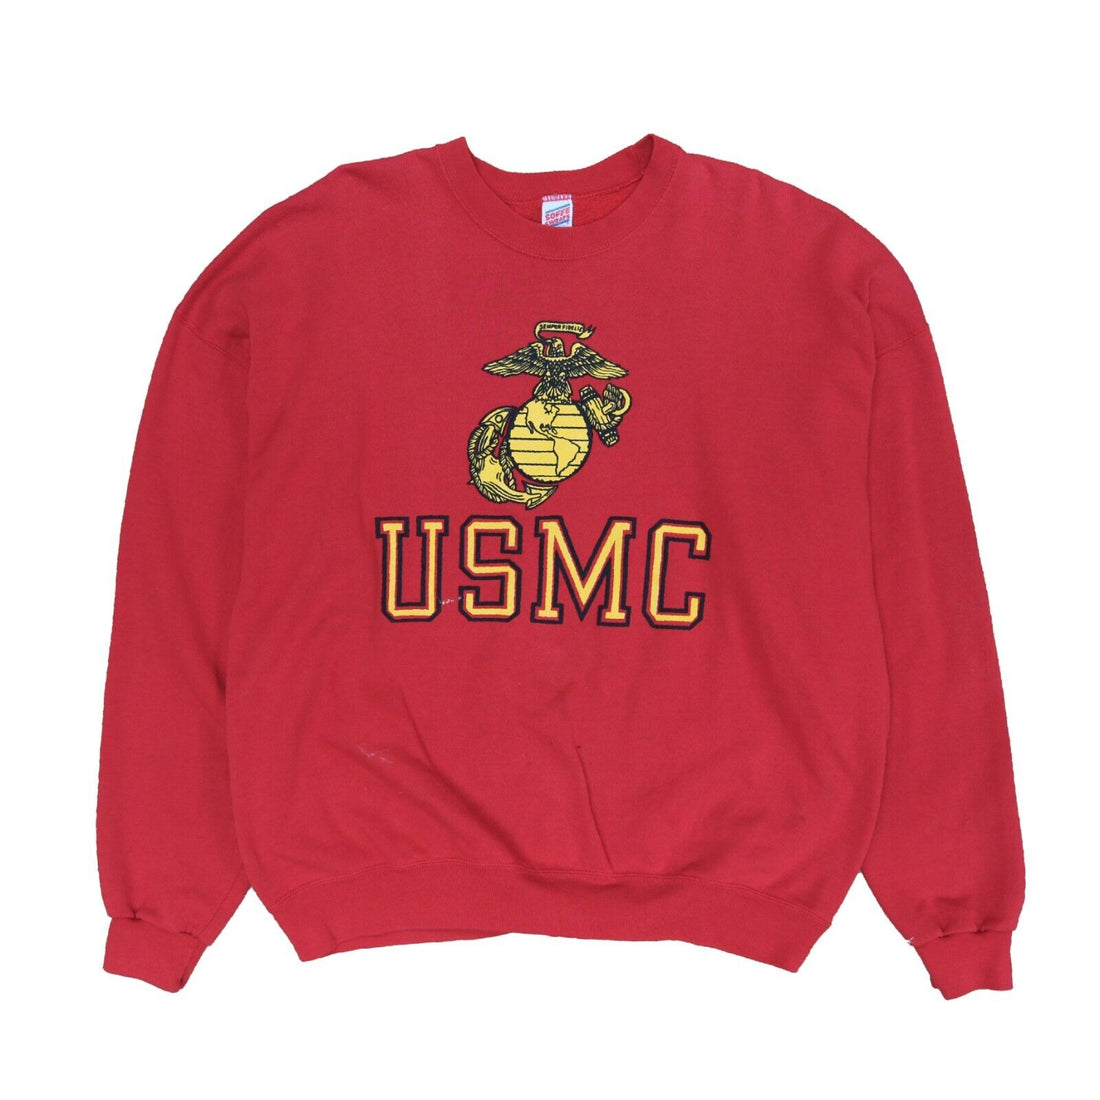 Vintage United States Marine Corps Sweatshirt Size 2XL Red USMC